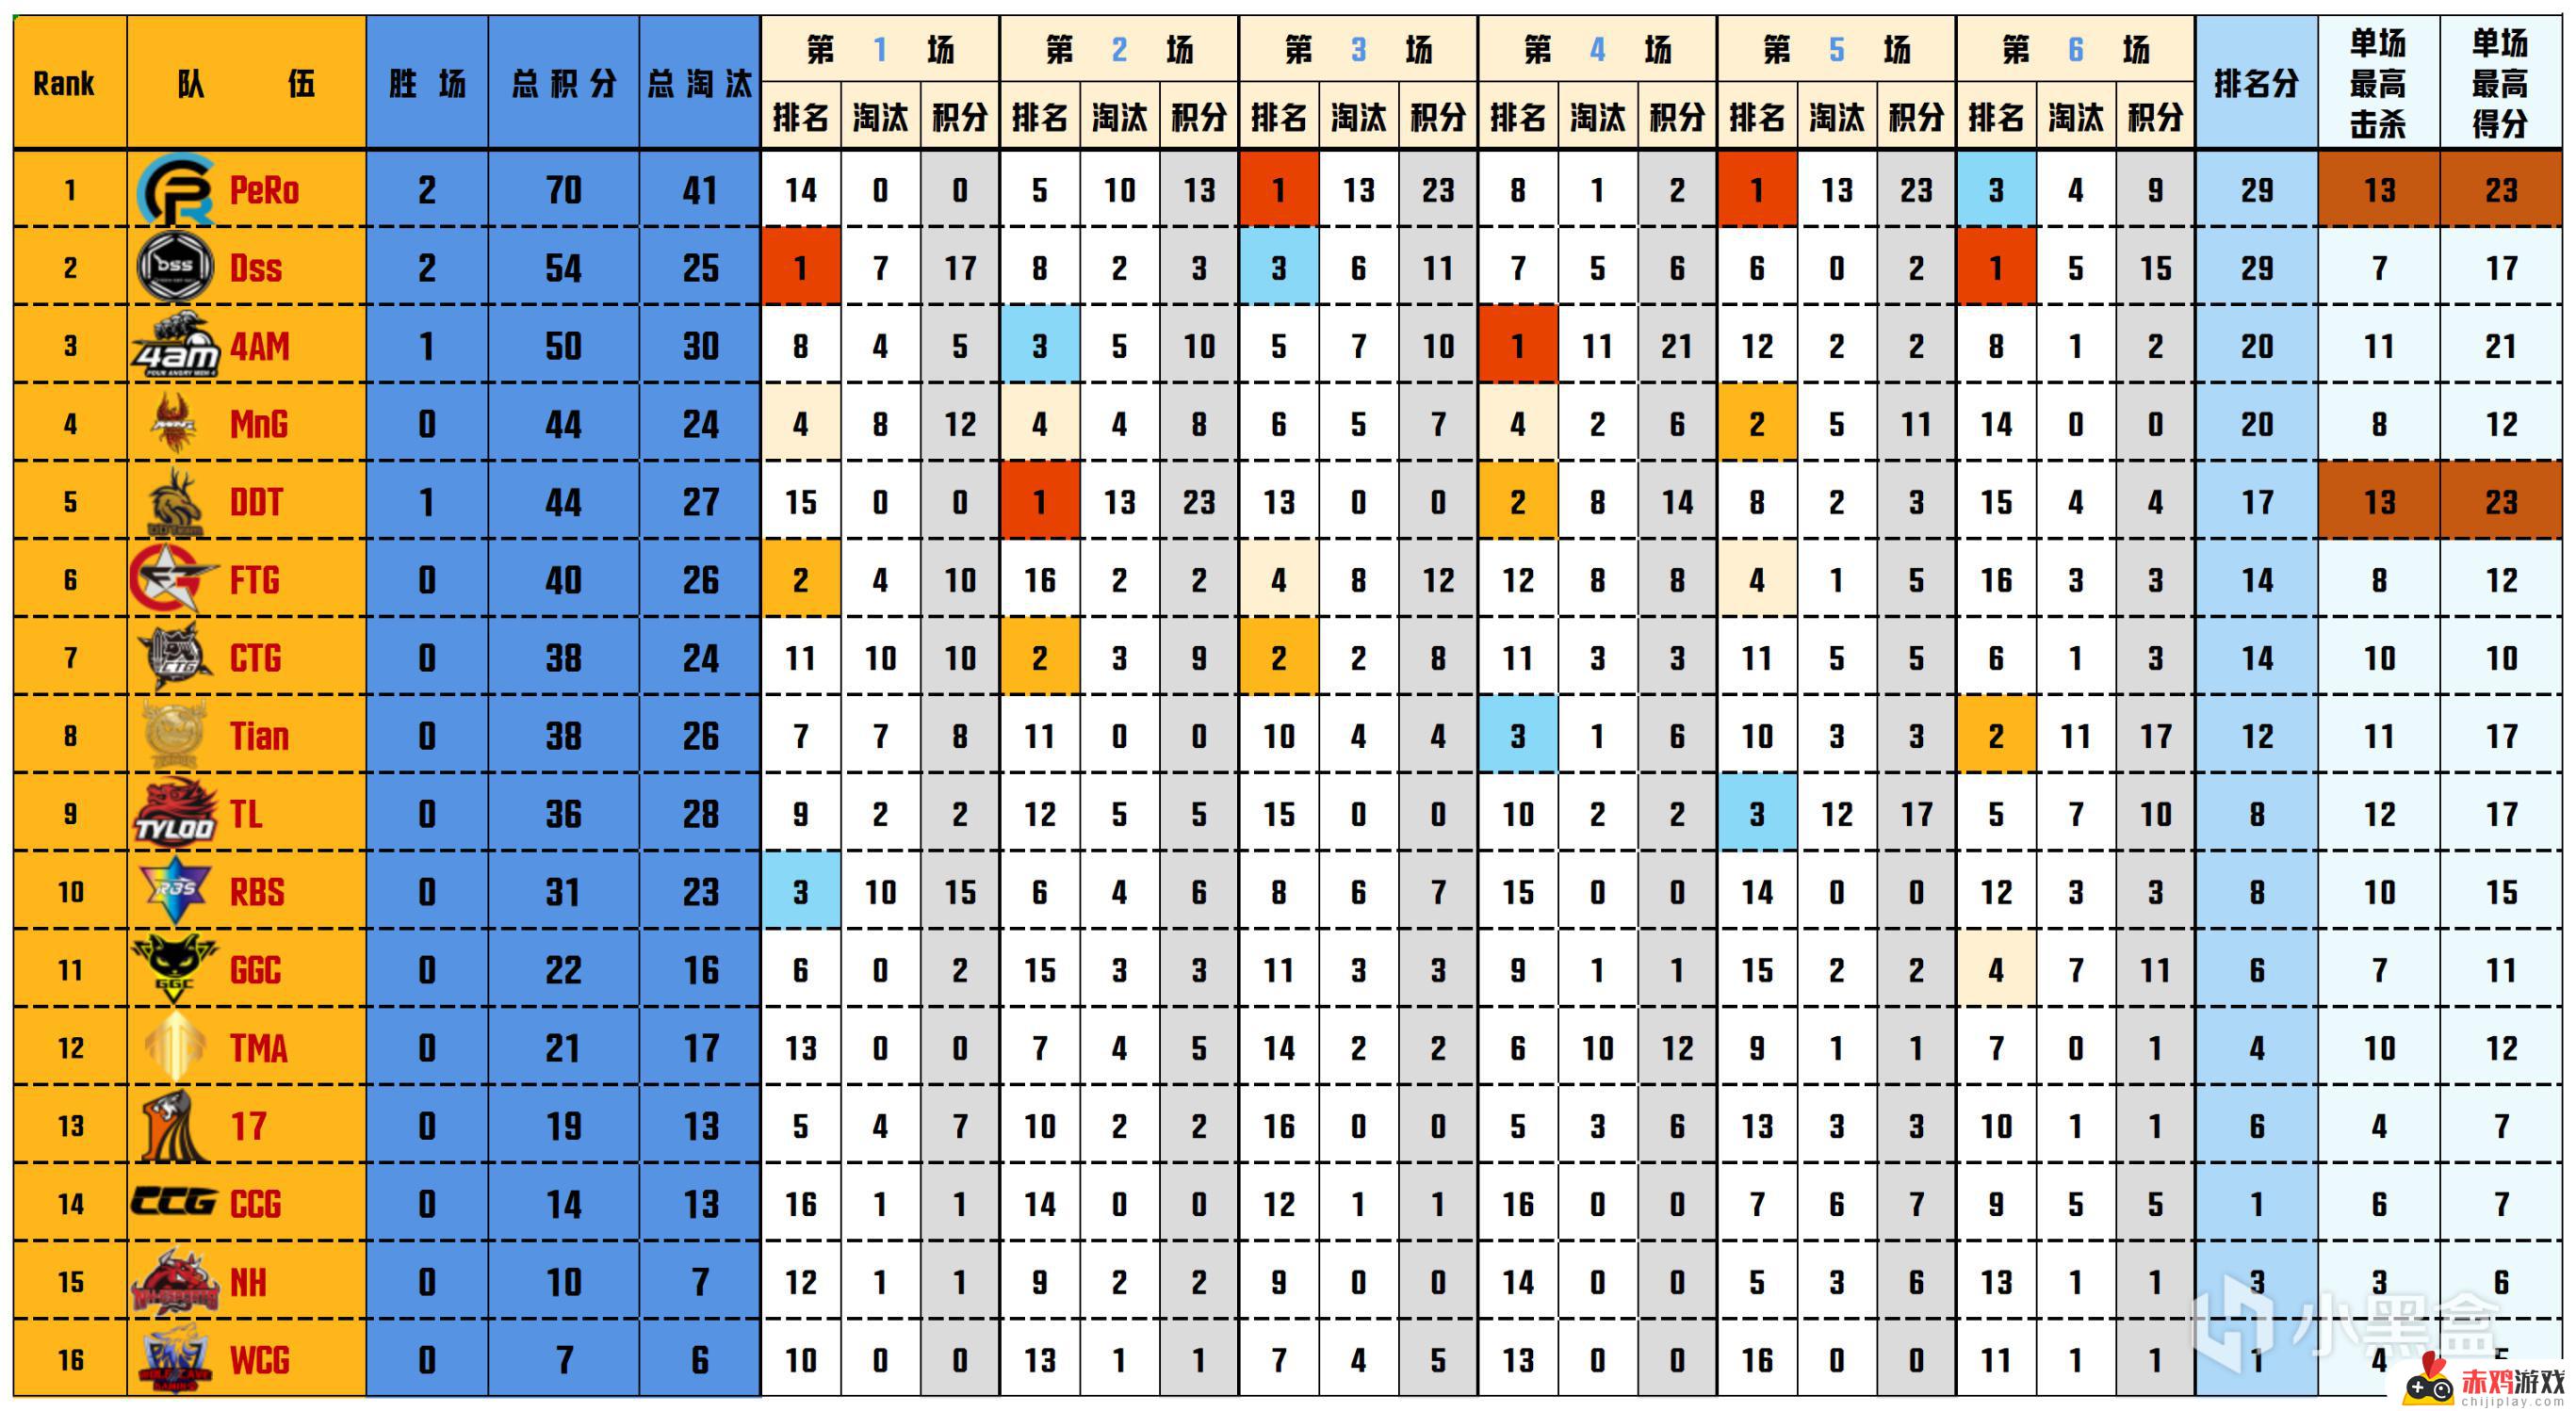 数据流PGS2预-决赛D1，PeRo 70分单日第一，Aixleft战神19淘汰，决赛相关度最高的赛事回顾